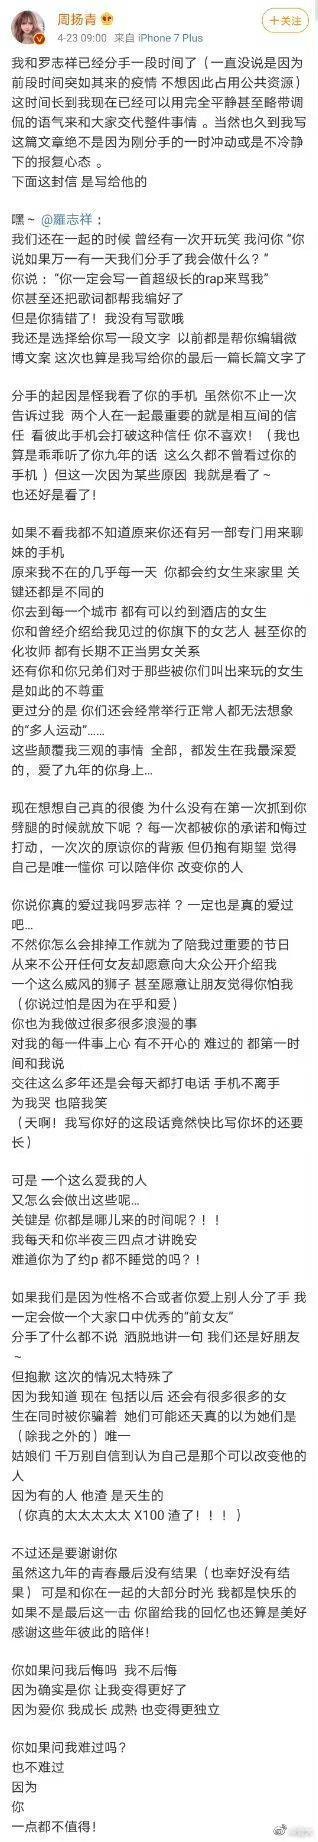 罗志祥现身北京机场疑似复出 曾透露正在录制综艺